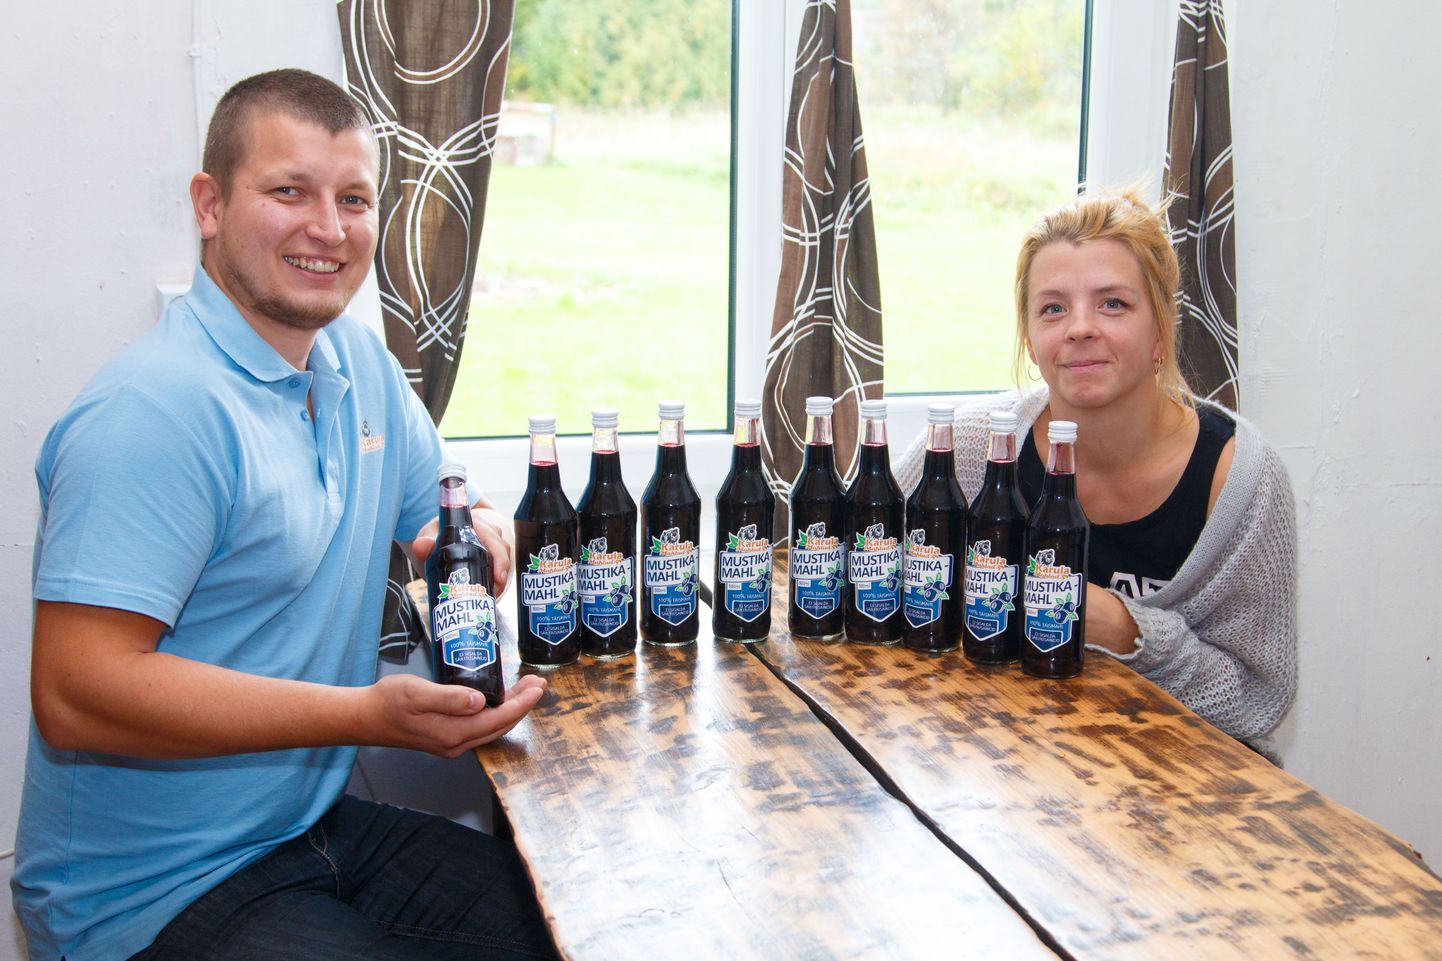 Karula vallas Vähero külas on end sisse sättinud Raido Õis ja Sigrid Rüütli, kes alustasid selle aasta suvel ettevõtlusega. 5. juulil asutatud Karula Mahlad OÜ on tänaseks pudelitesse villinud üle 300 pudeli mustikamahla.